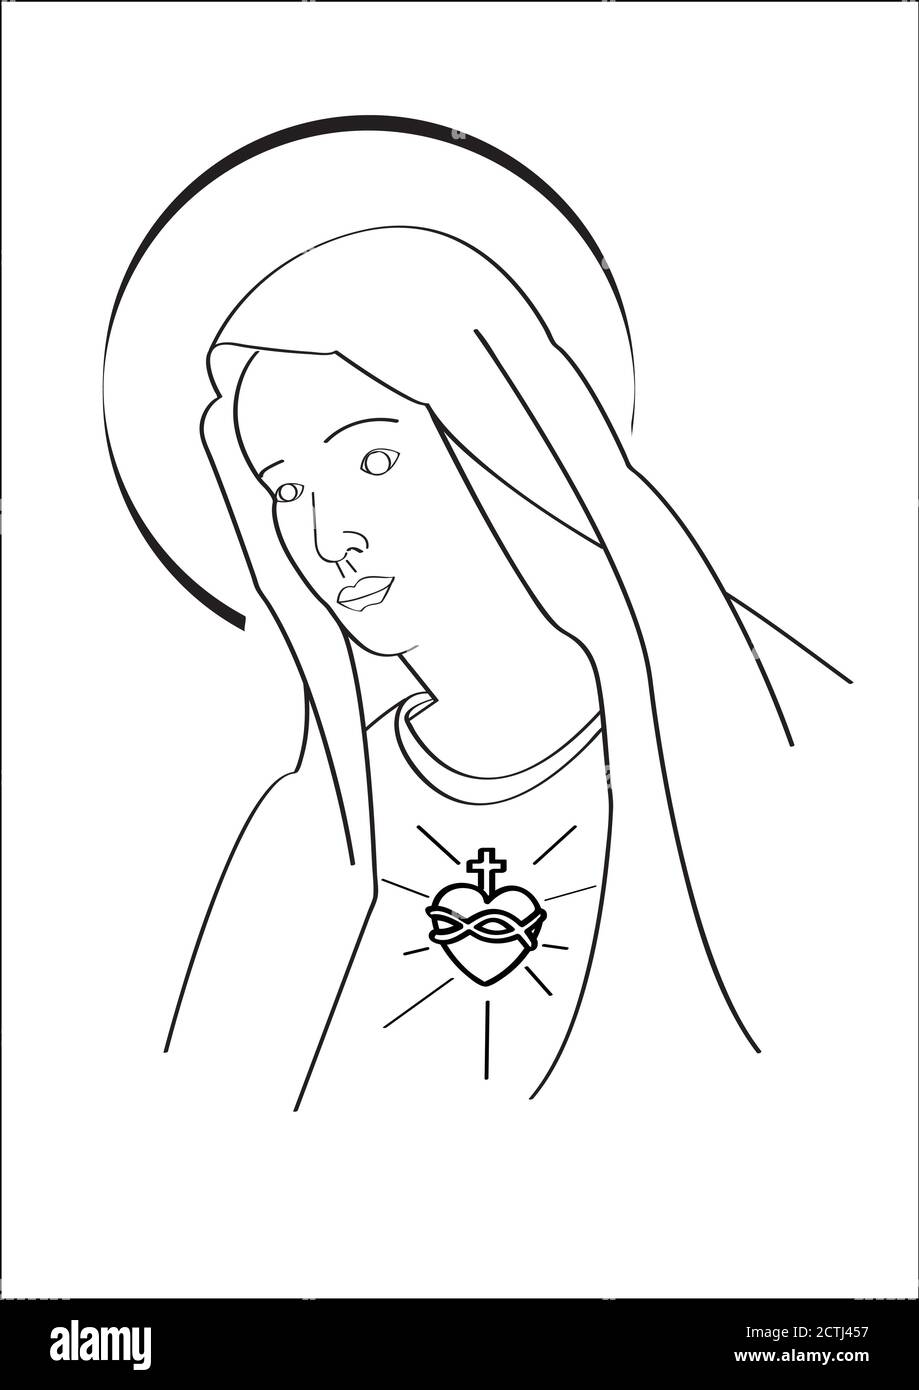 Vergine Maria madre di Gesù cristo, cuore sacro di nostra madre Illustrazione Vettoriale